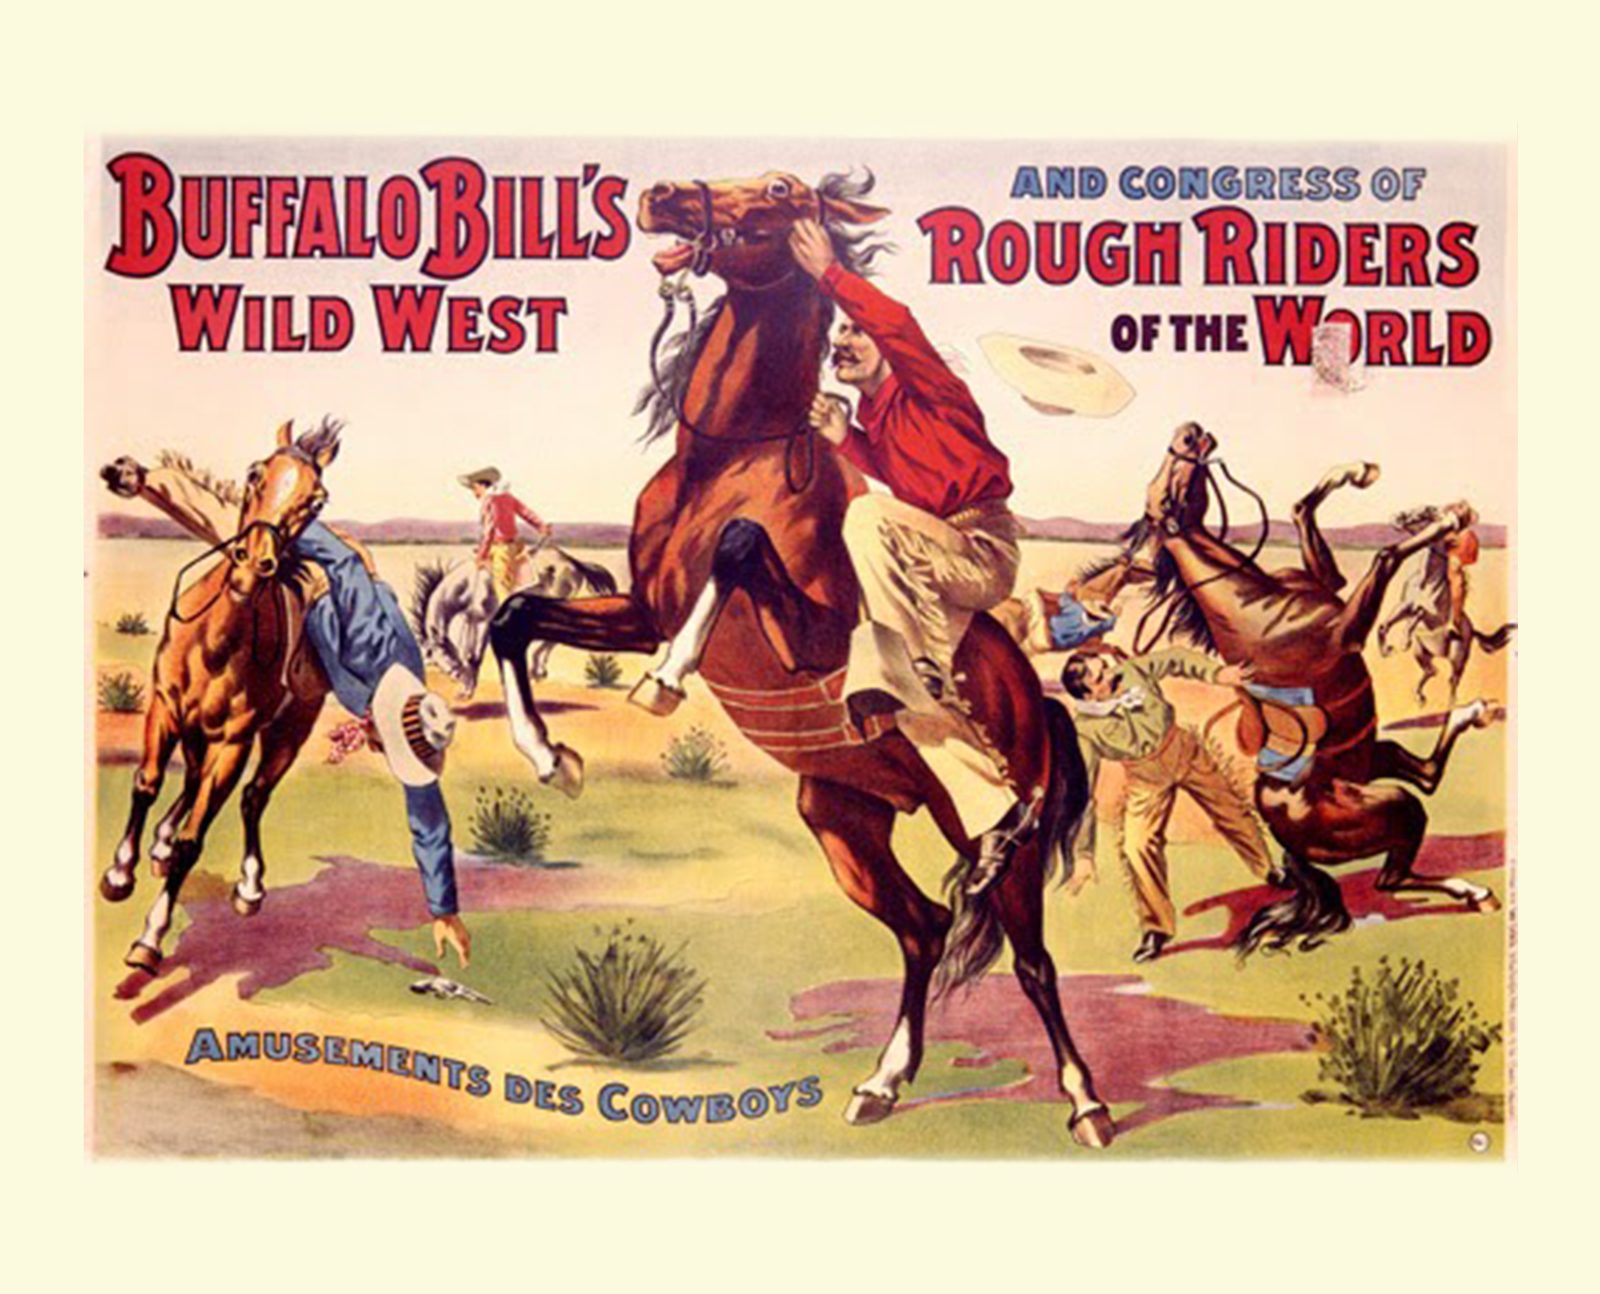 Buffalo Bill's Wild Wild West Show